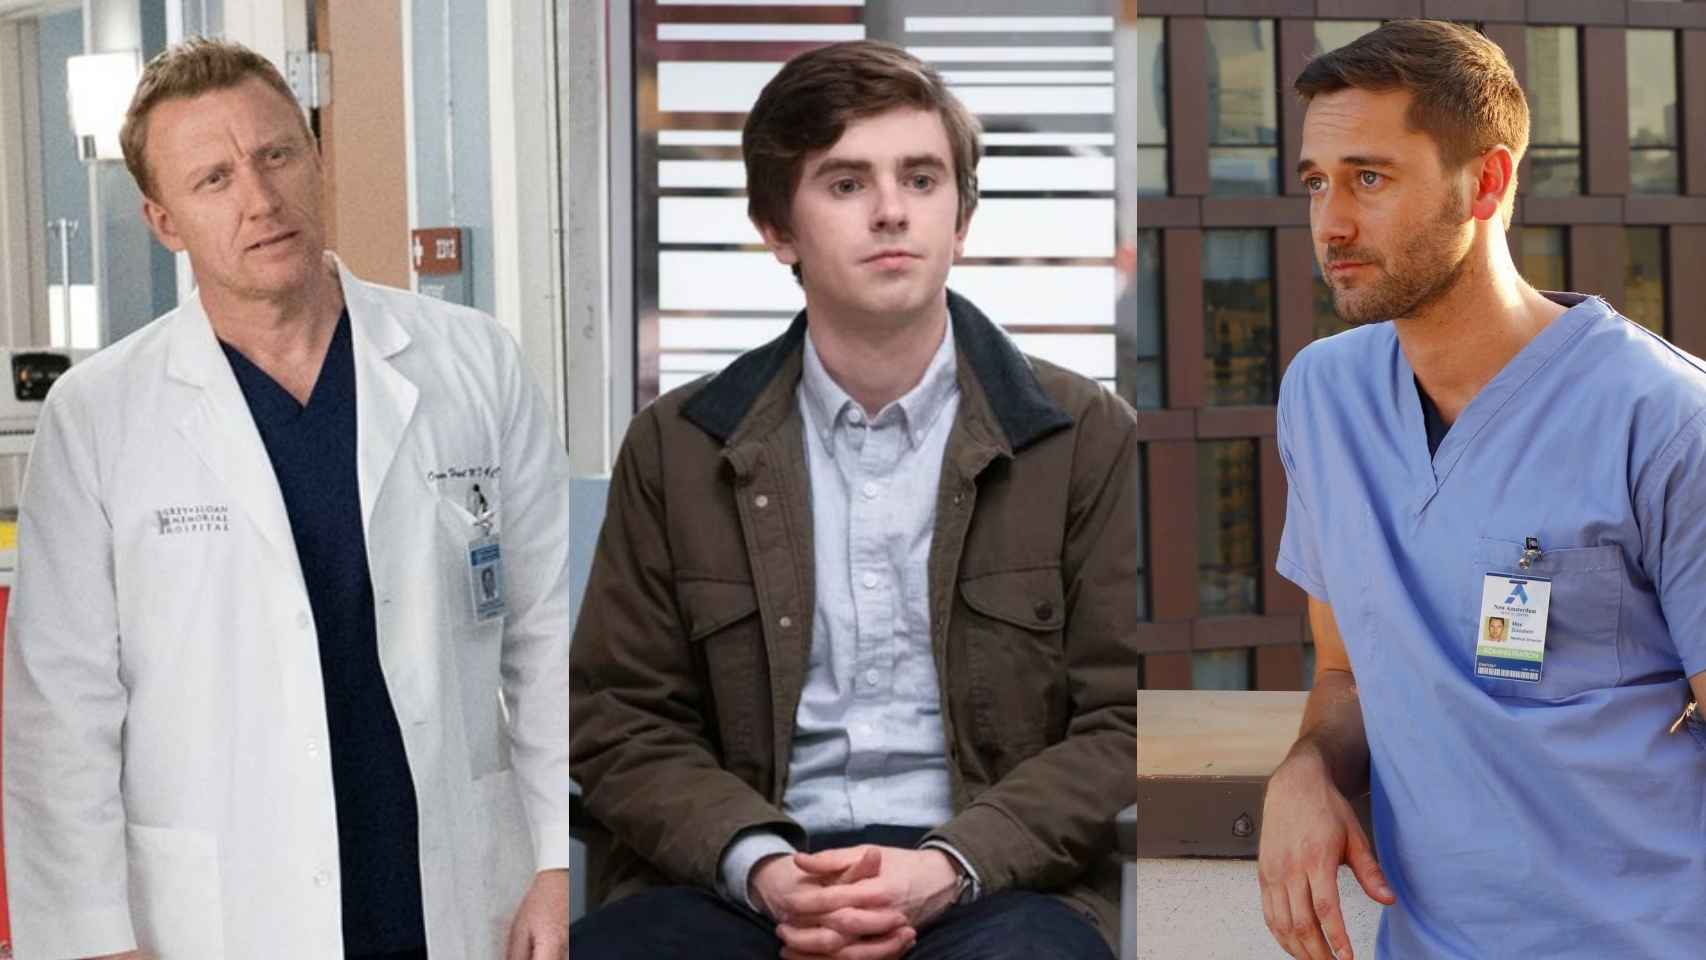 Las 10 mejores series de médicos para ver en Netflix, HBO, Amazon, Disney+, Movistar+ y más